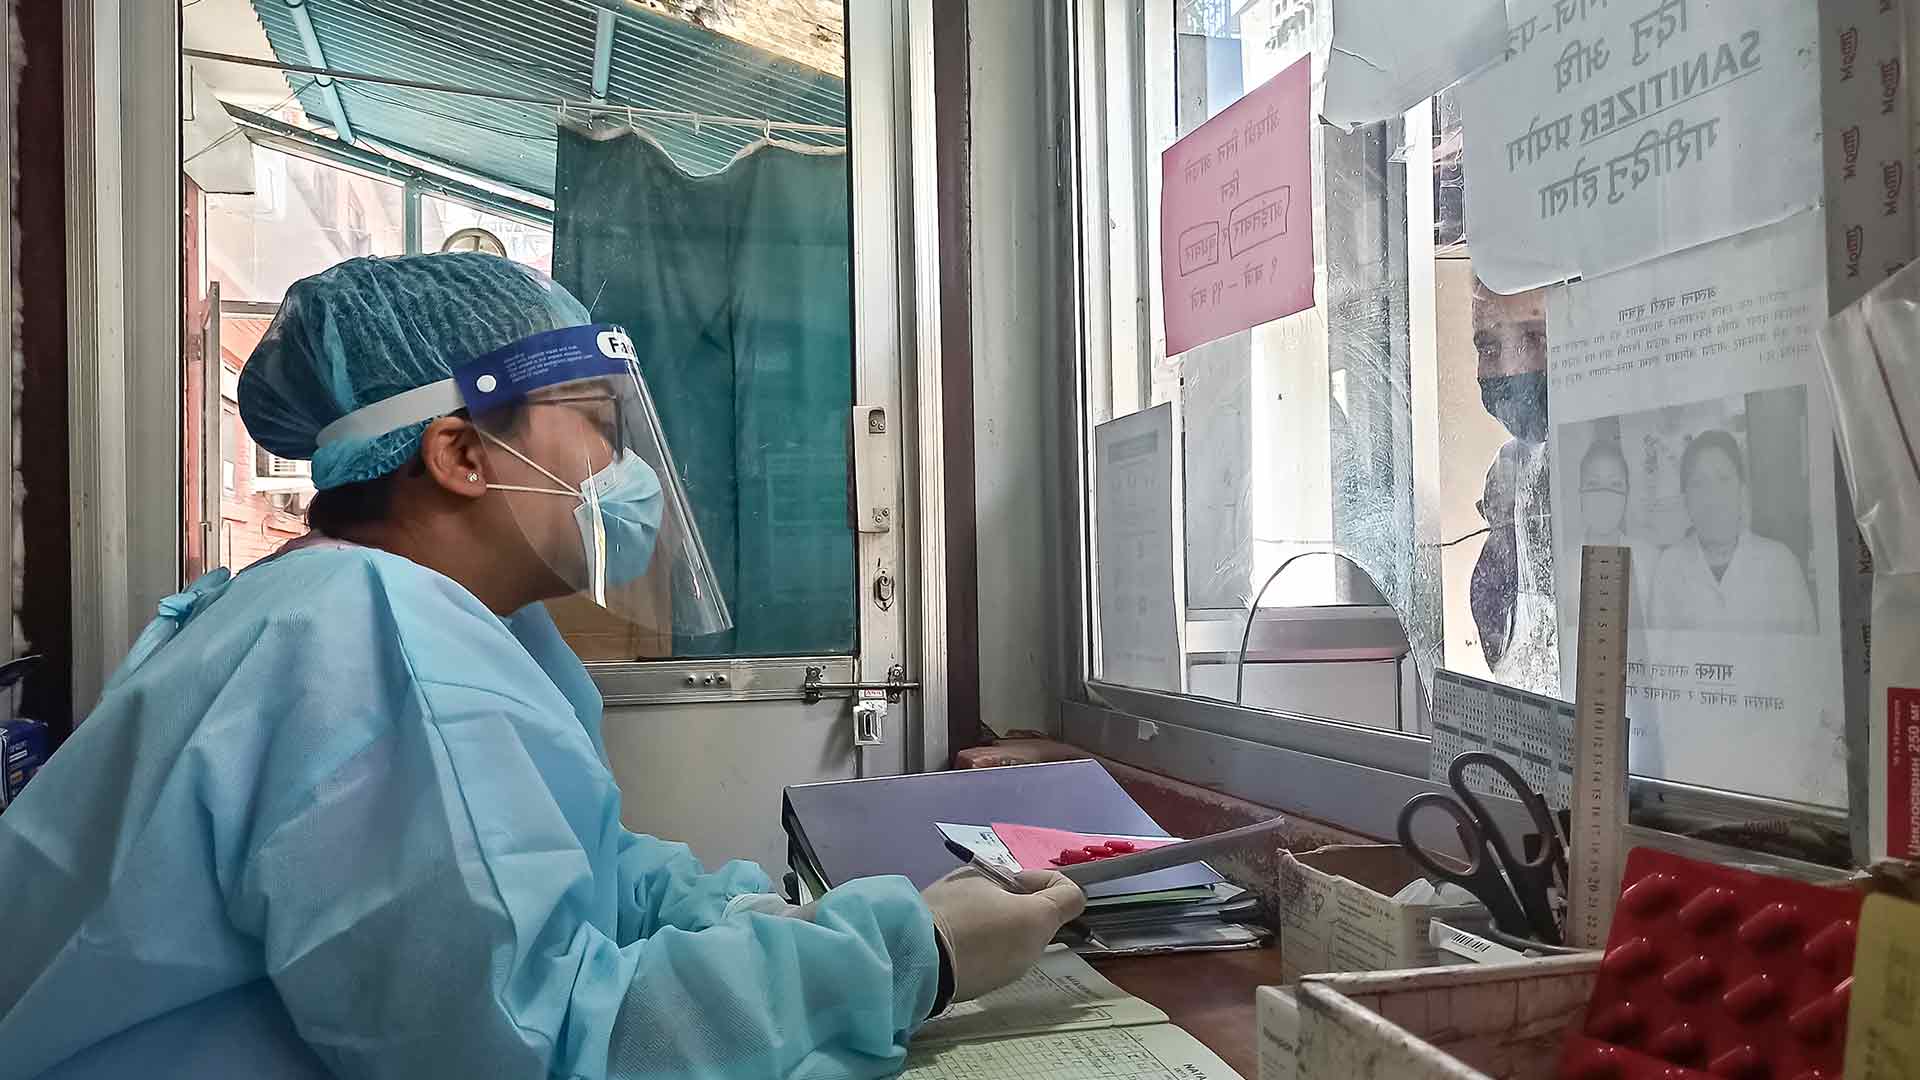 Kuratorium TB Spendenaufruf 2020 DOT Room Nepal